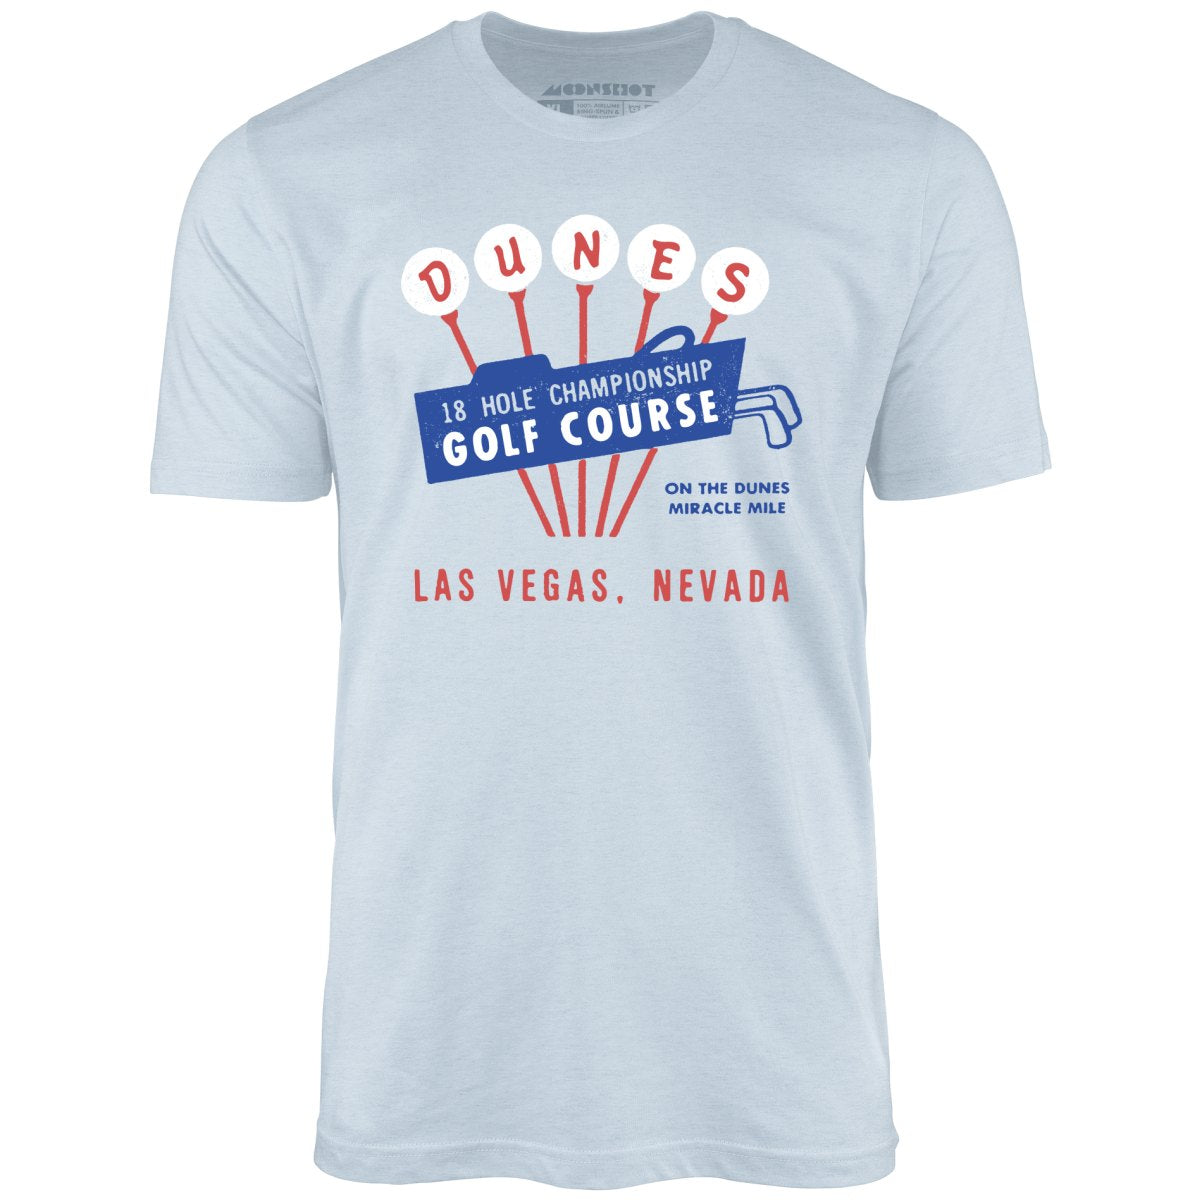 Dunes Golf Course - Vintage Las Vegas - Unisex T-Shirt